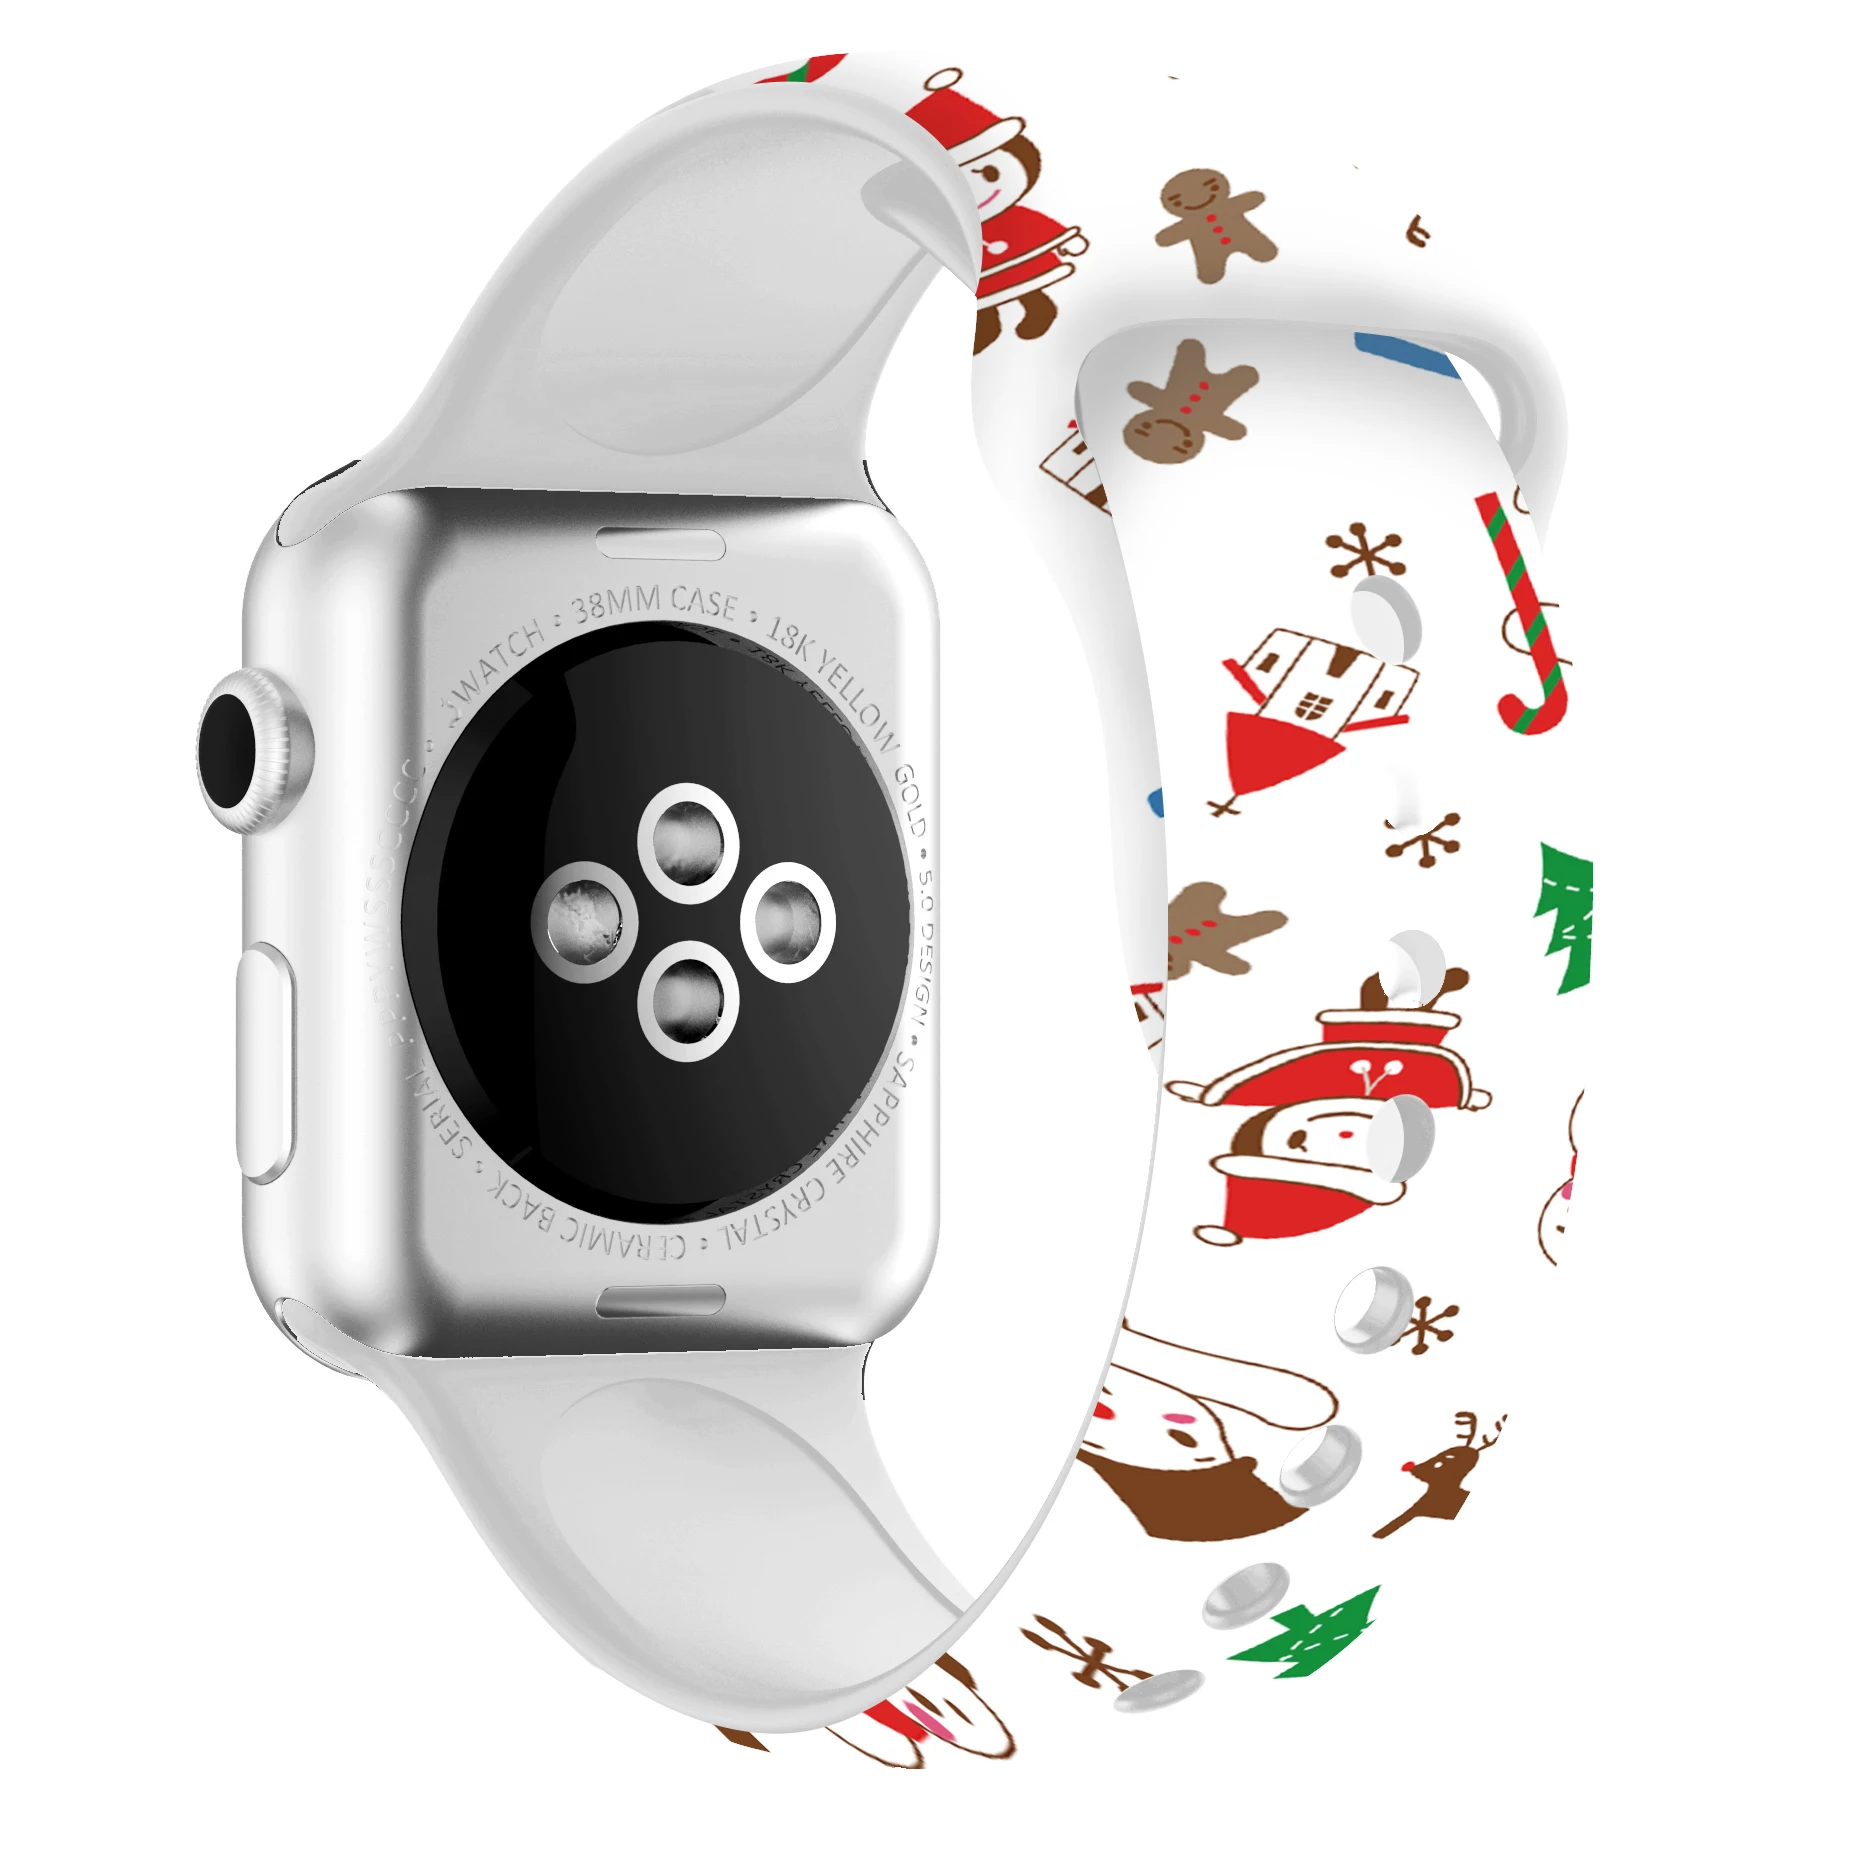 Ремешок для часов женский Силиконовый ремешок для Apple Watch 38 мм 42 мм 44 мм 40 мм милый Рождественский браслет Санта для iWatch серии 5 4 3 2 1 ремешок для часов подарок